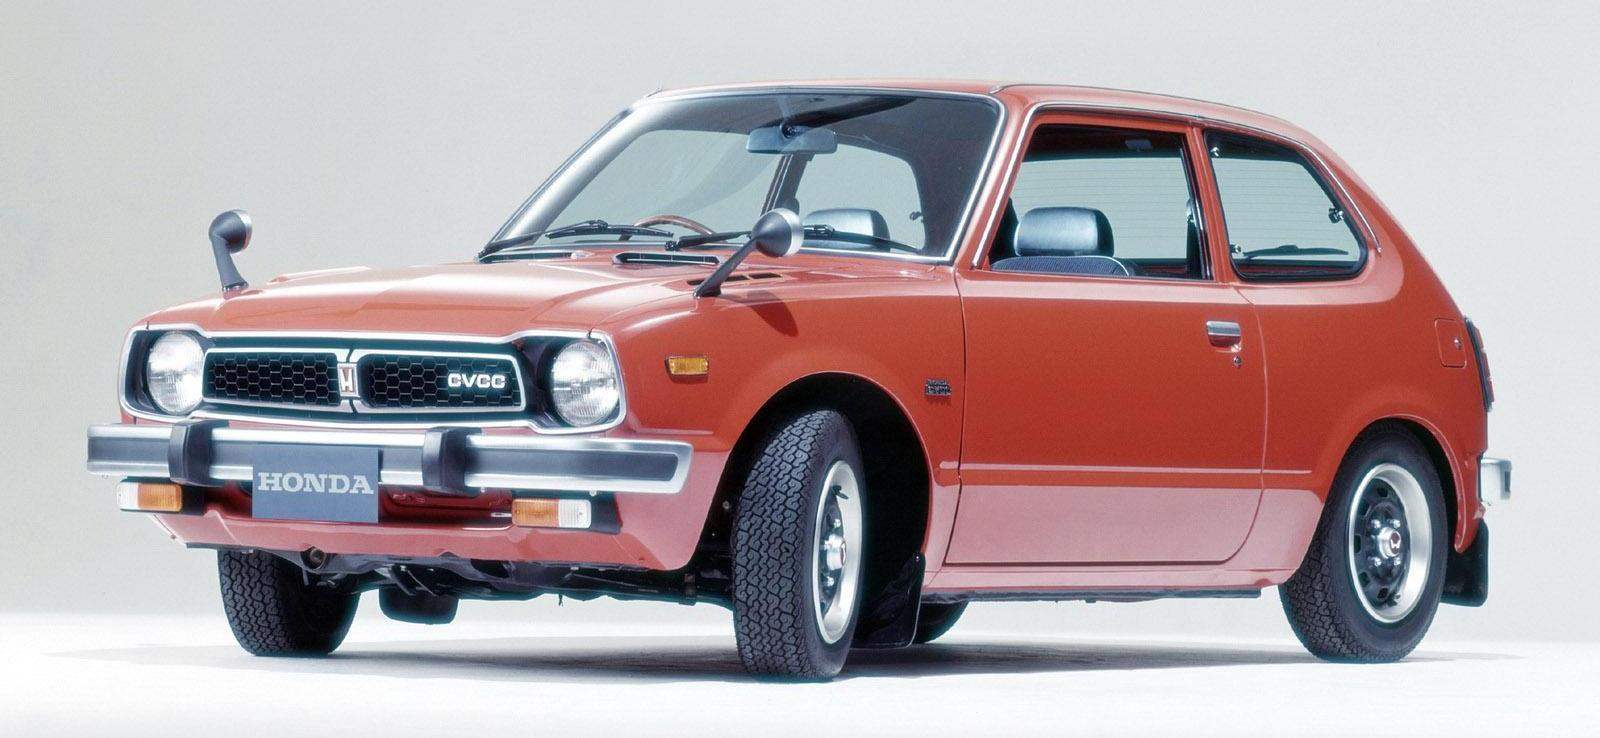 Первая машина с названием Civic образца 1972 юда, предназначенная в основном на экспорт. Автомобиль гольф-класса имел весьма экономичный и экологически безопасный двигатель с вихревыми камерами сгорания